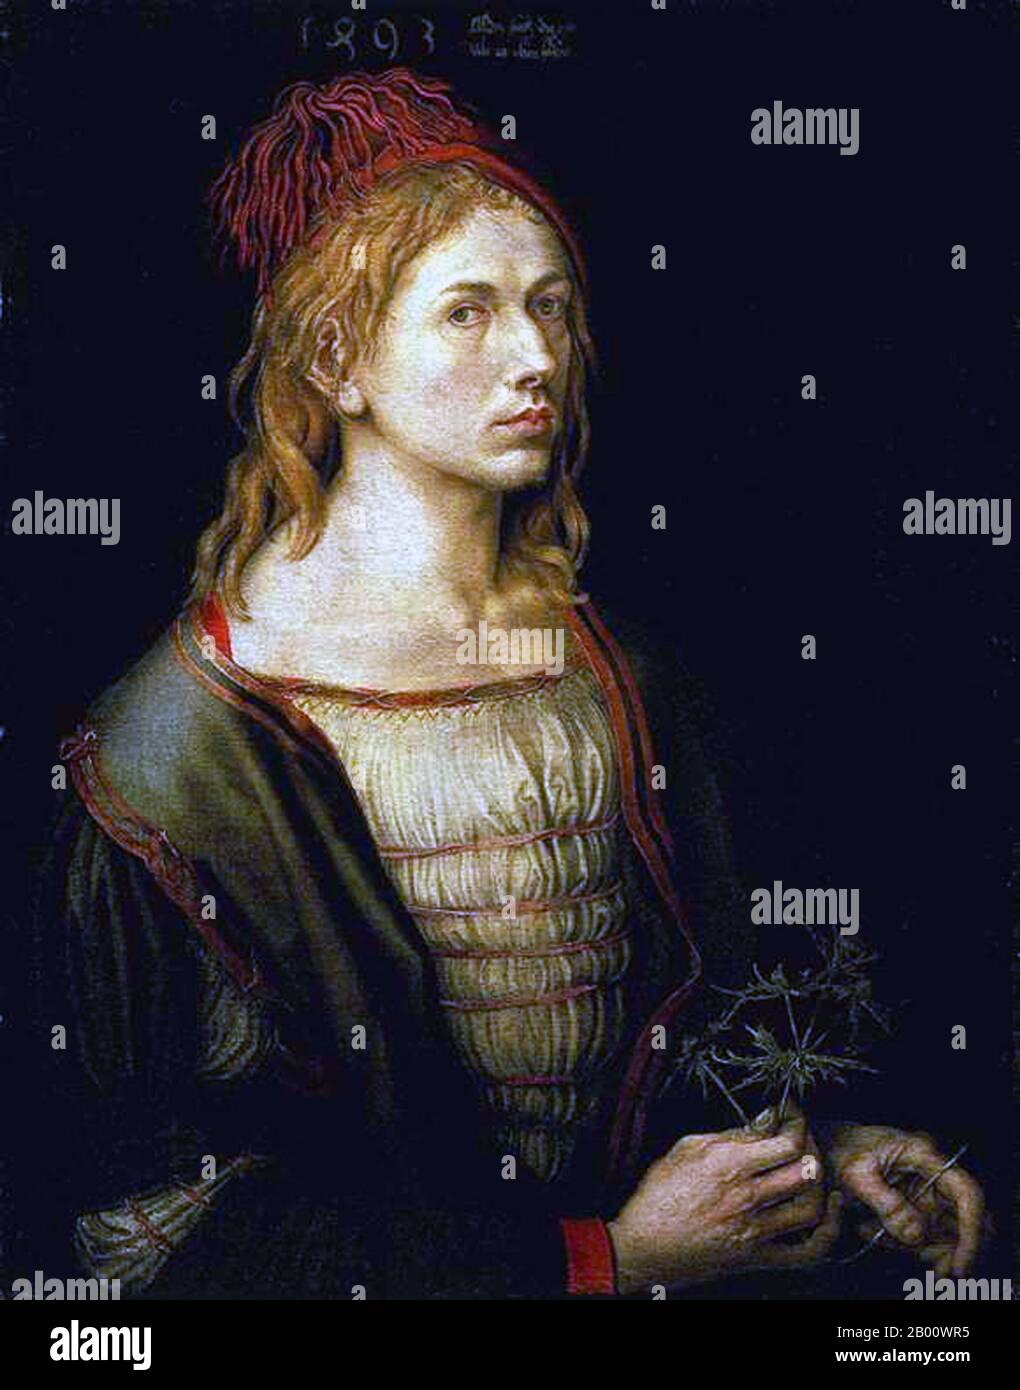 Germania: 'Autoritratto dell'artista Holding a Thistle'. Olio su tela dipinto di Albrecht Dürer (1471-1528), 1493. Albrecht Dürer (Norimberga, 21 maggio 1471 – Norimberga, 6 aprile 1528) è stato un . Le sue stampe stabilirono la sua reputazione in tutta Europa quando era ancora negli anni '20, e da allora è stato tradizionalmente considerato come il più grande artista del Rinascimento settentrionale. L'introduzione di motivi classici nell'arte settentrionale da parte di Dürer, attraverso la sua conoscenza di artisti italiani e umanisti tedeschi, ha garantito la sua importante reputazione. Foto Stock